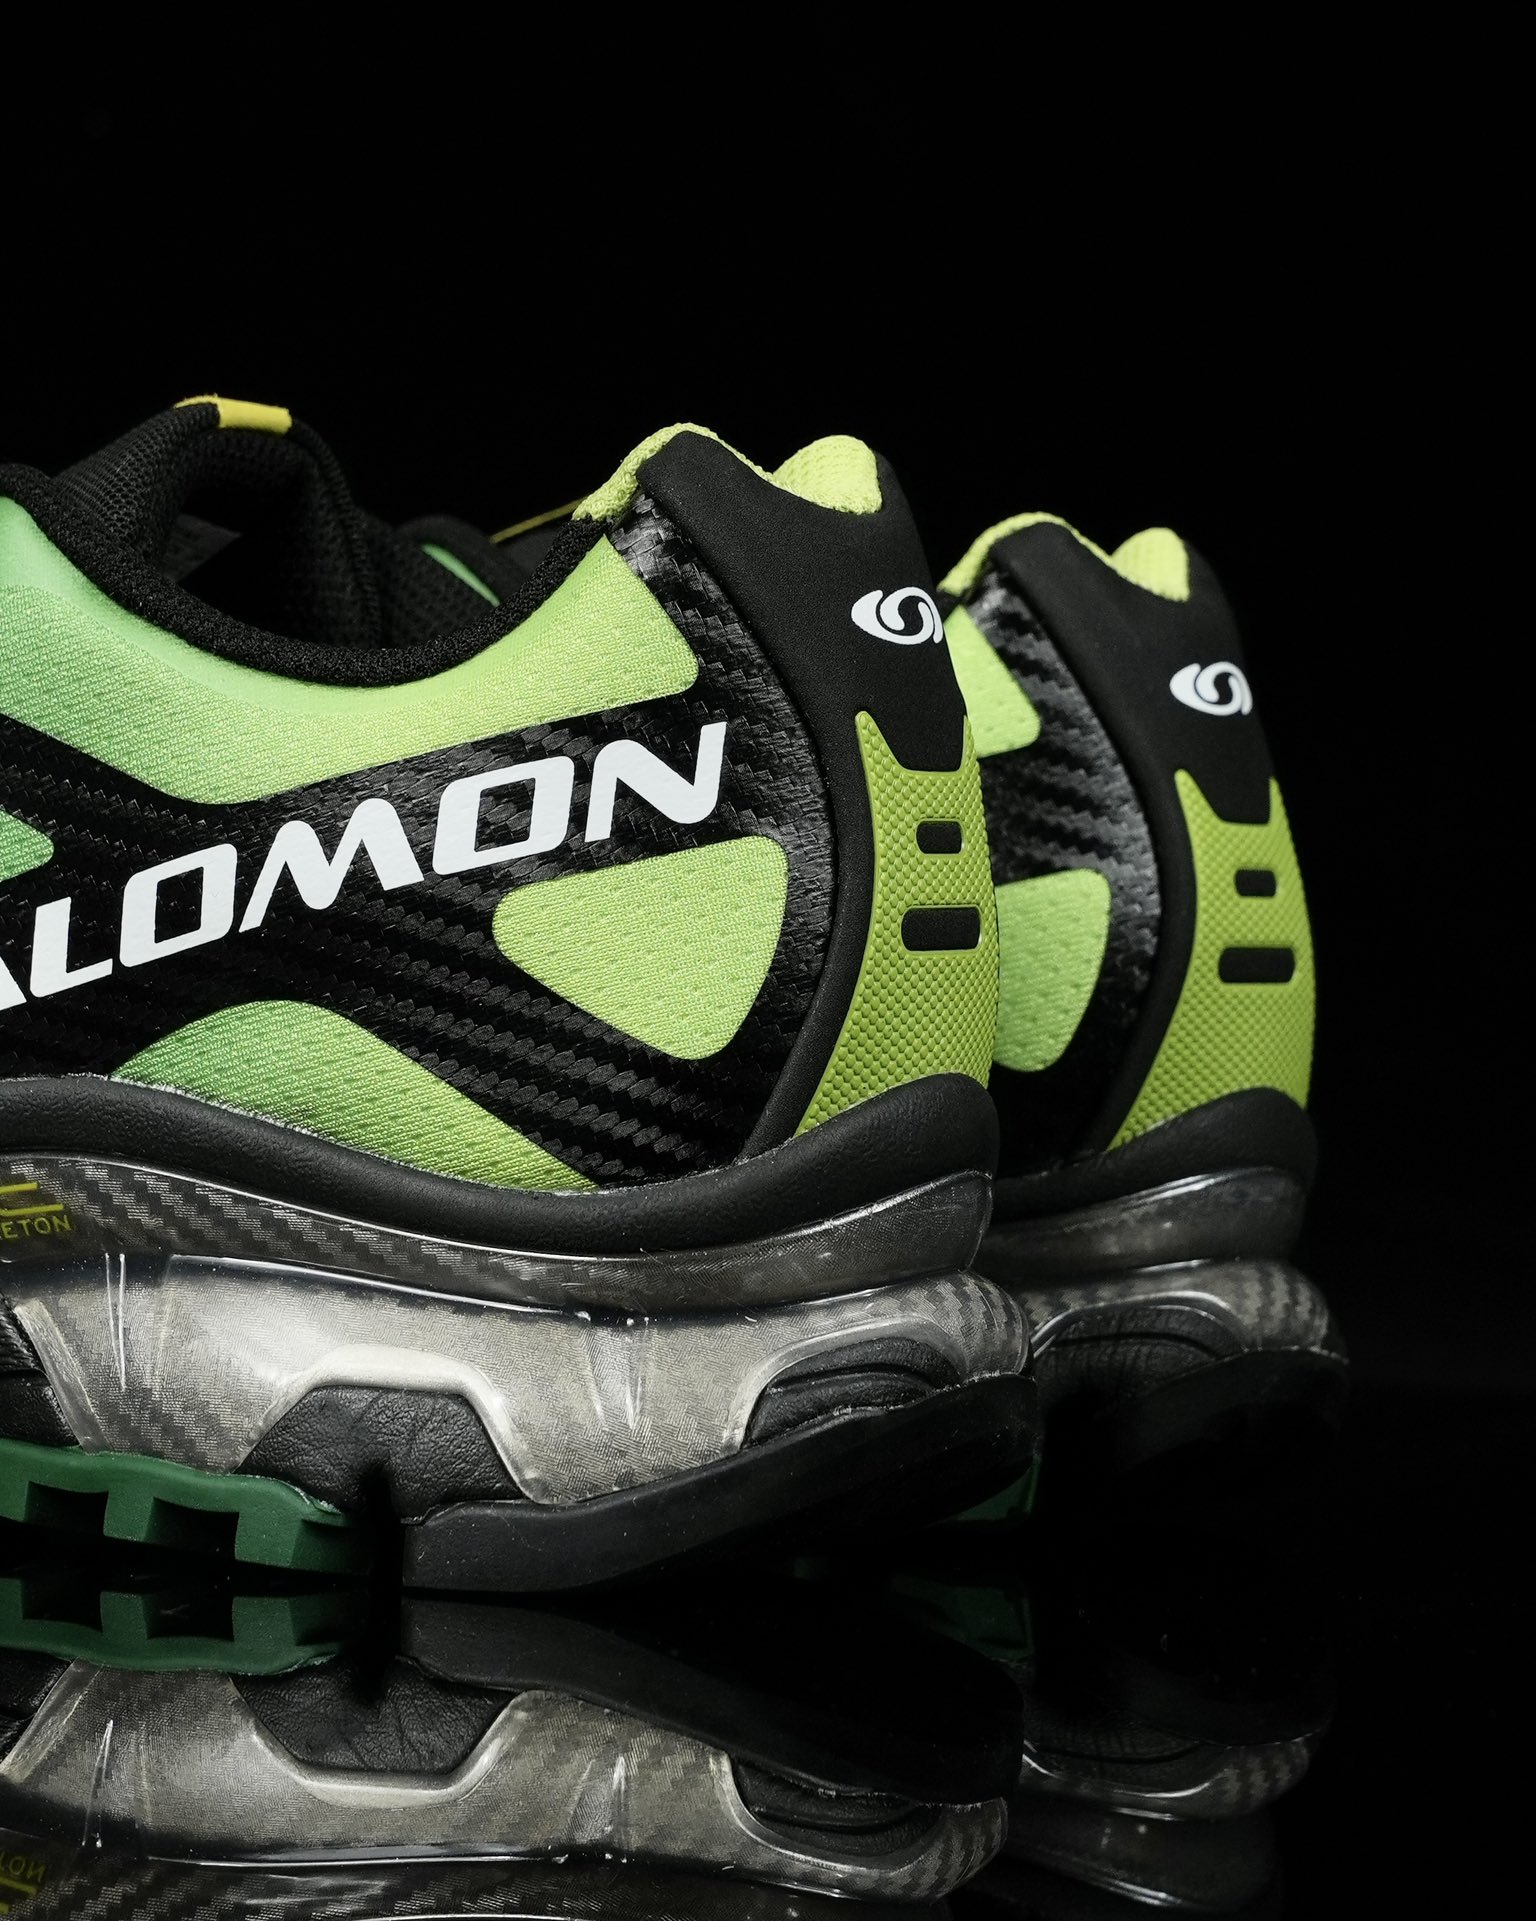 SalomonXT-4OG萨洛蒙高科技户外休闲跑鞋471332鞋身采用耐磨TPU和网眼材质打造让鞋子更轻